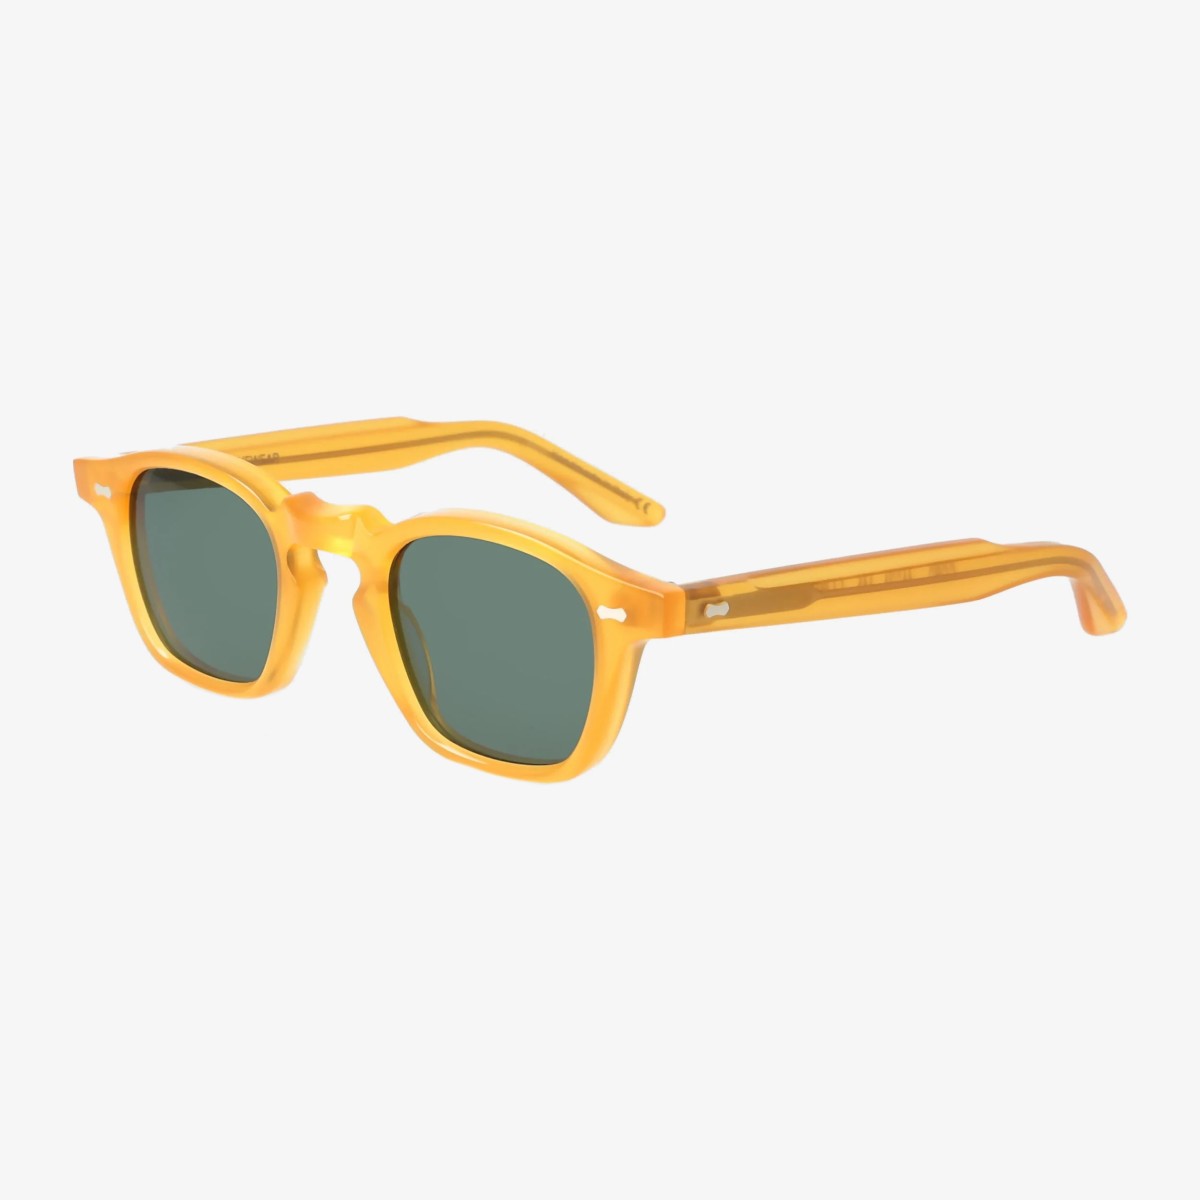 TBD Eyewear Cord saulės akiniai geltonais rėmeliais ir žaliais lęšiais